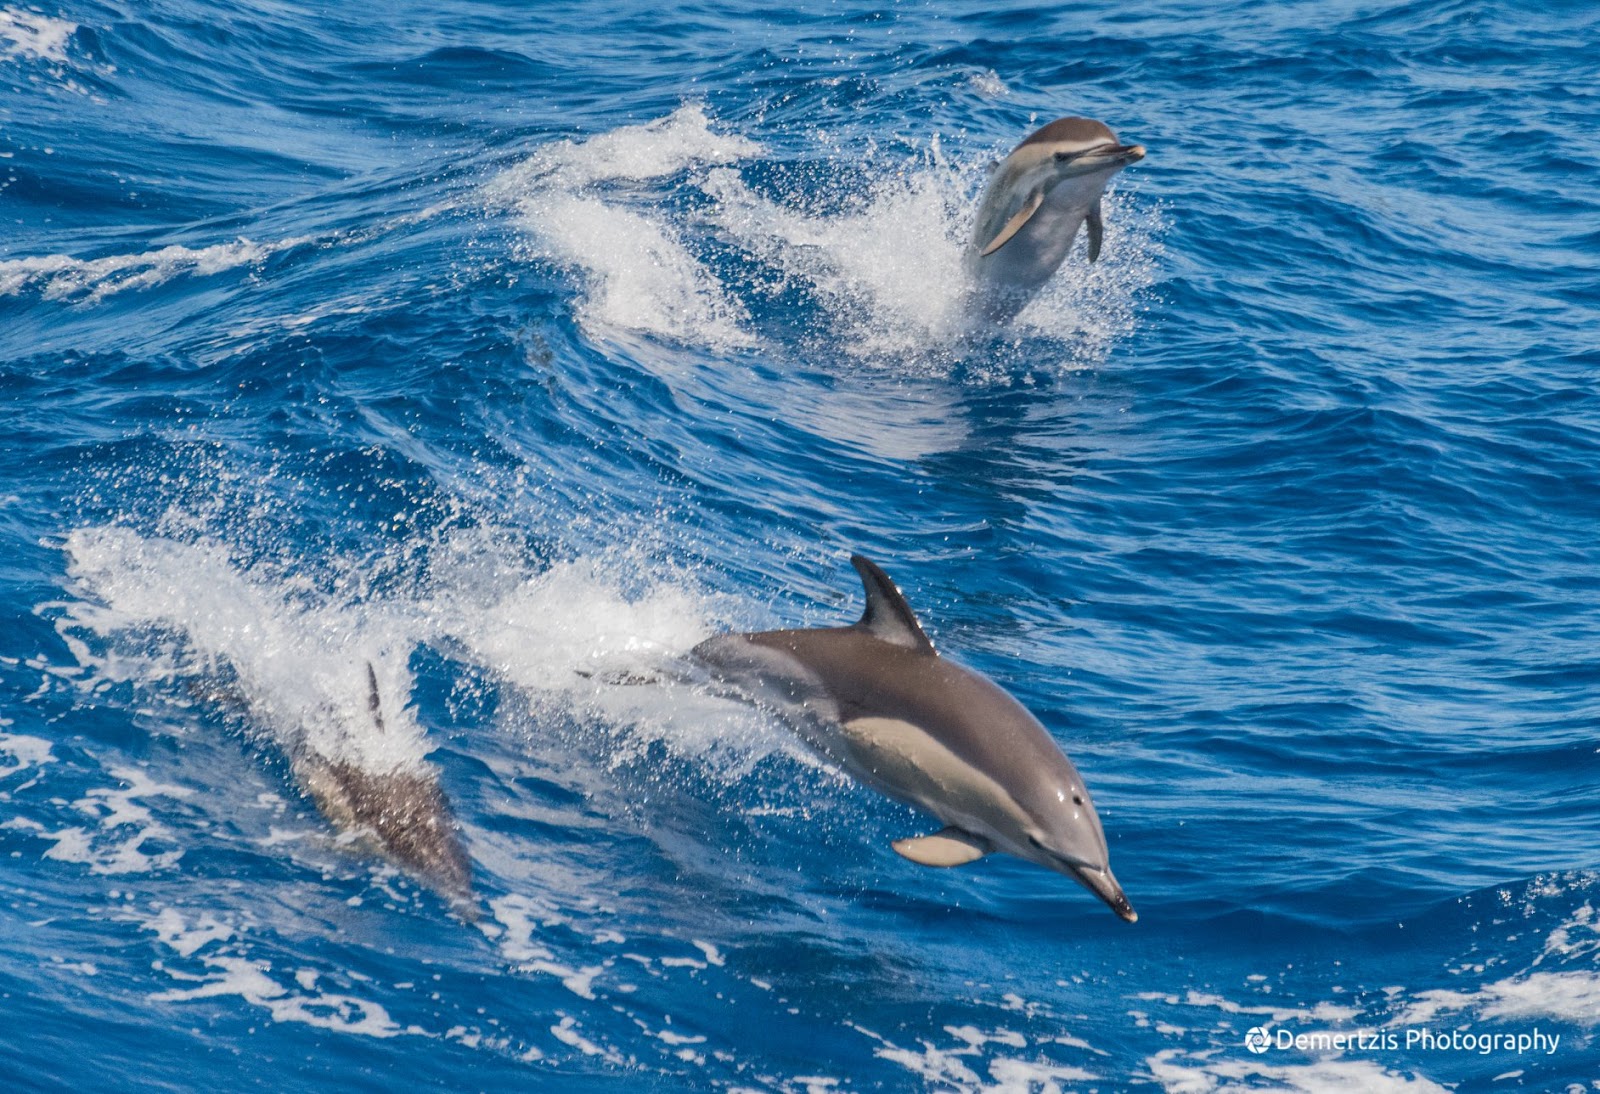 Νεκρό δελφίνι ξεβράστηκε στις ακτές της Σάμου – Είχε ακρωτηριαστεί η ουρά του (φώτο)